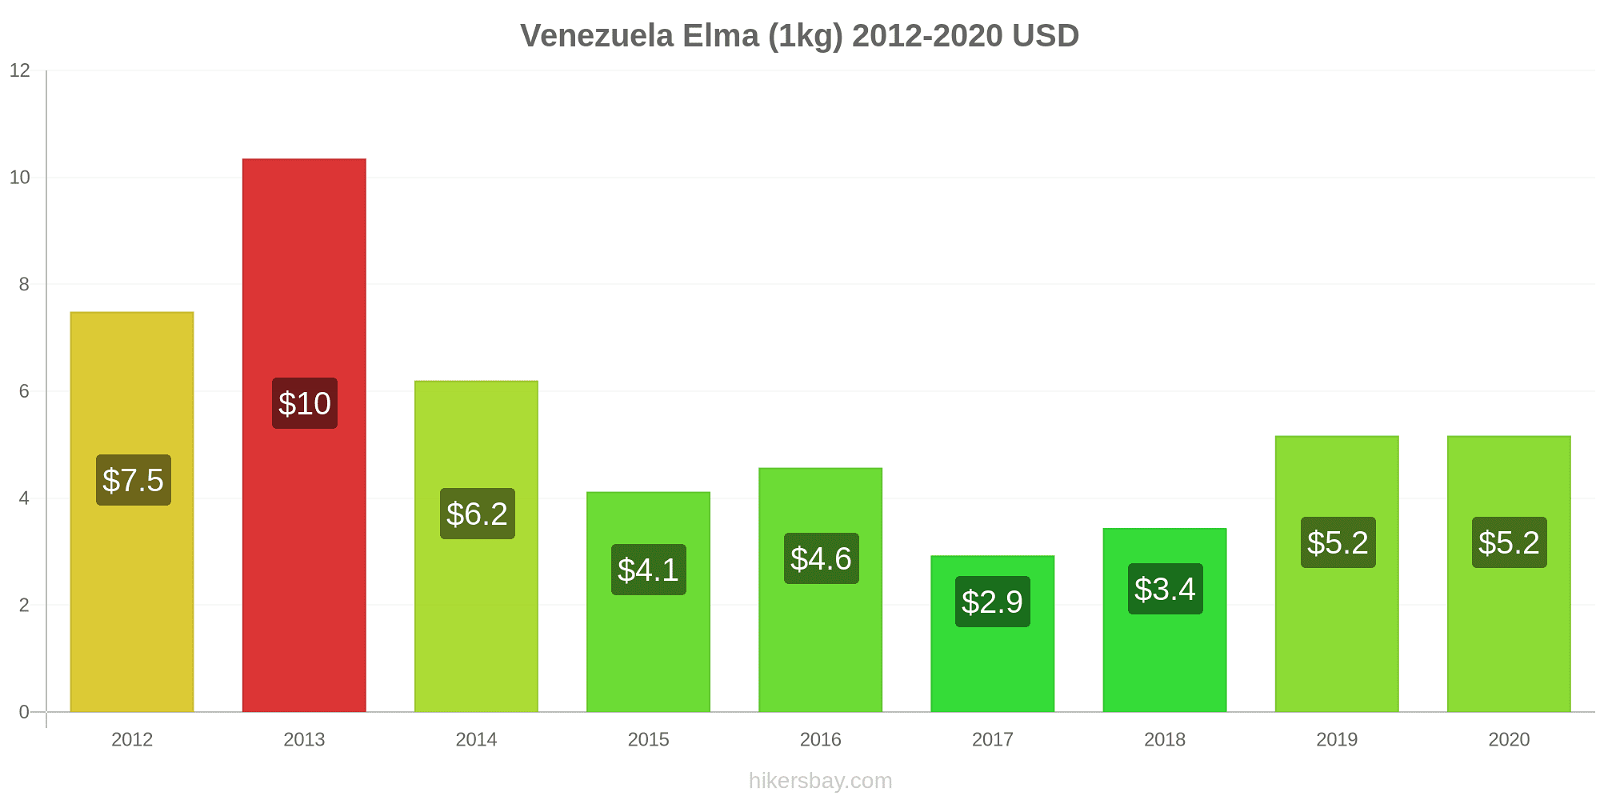 Venezuela fiyat değişiklikleri Elma (1kg) hikersbay.com